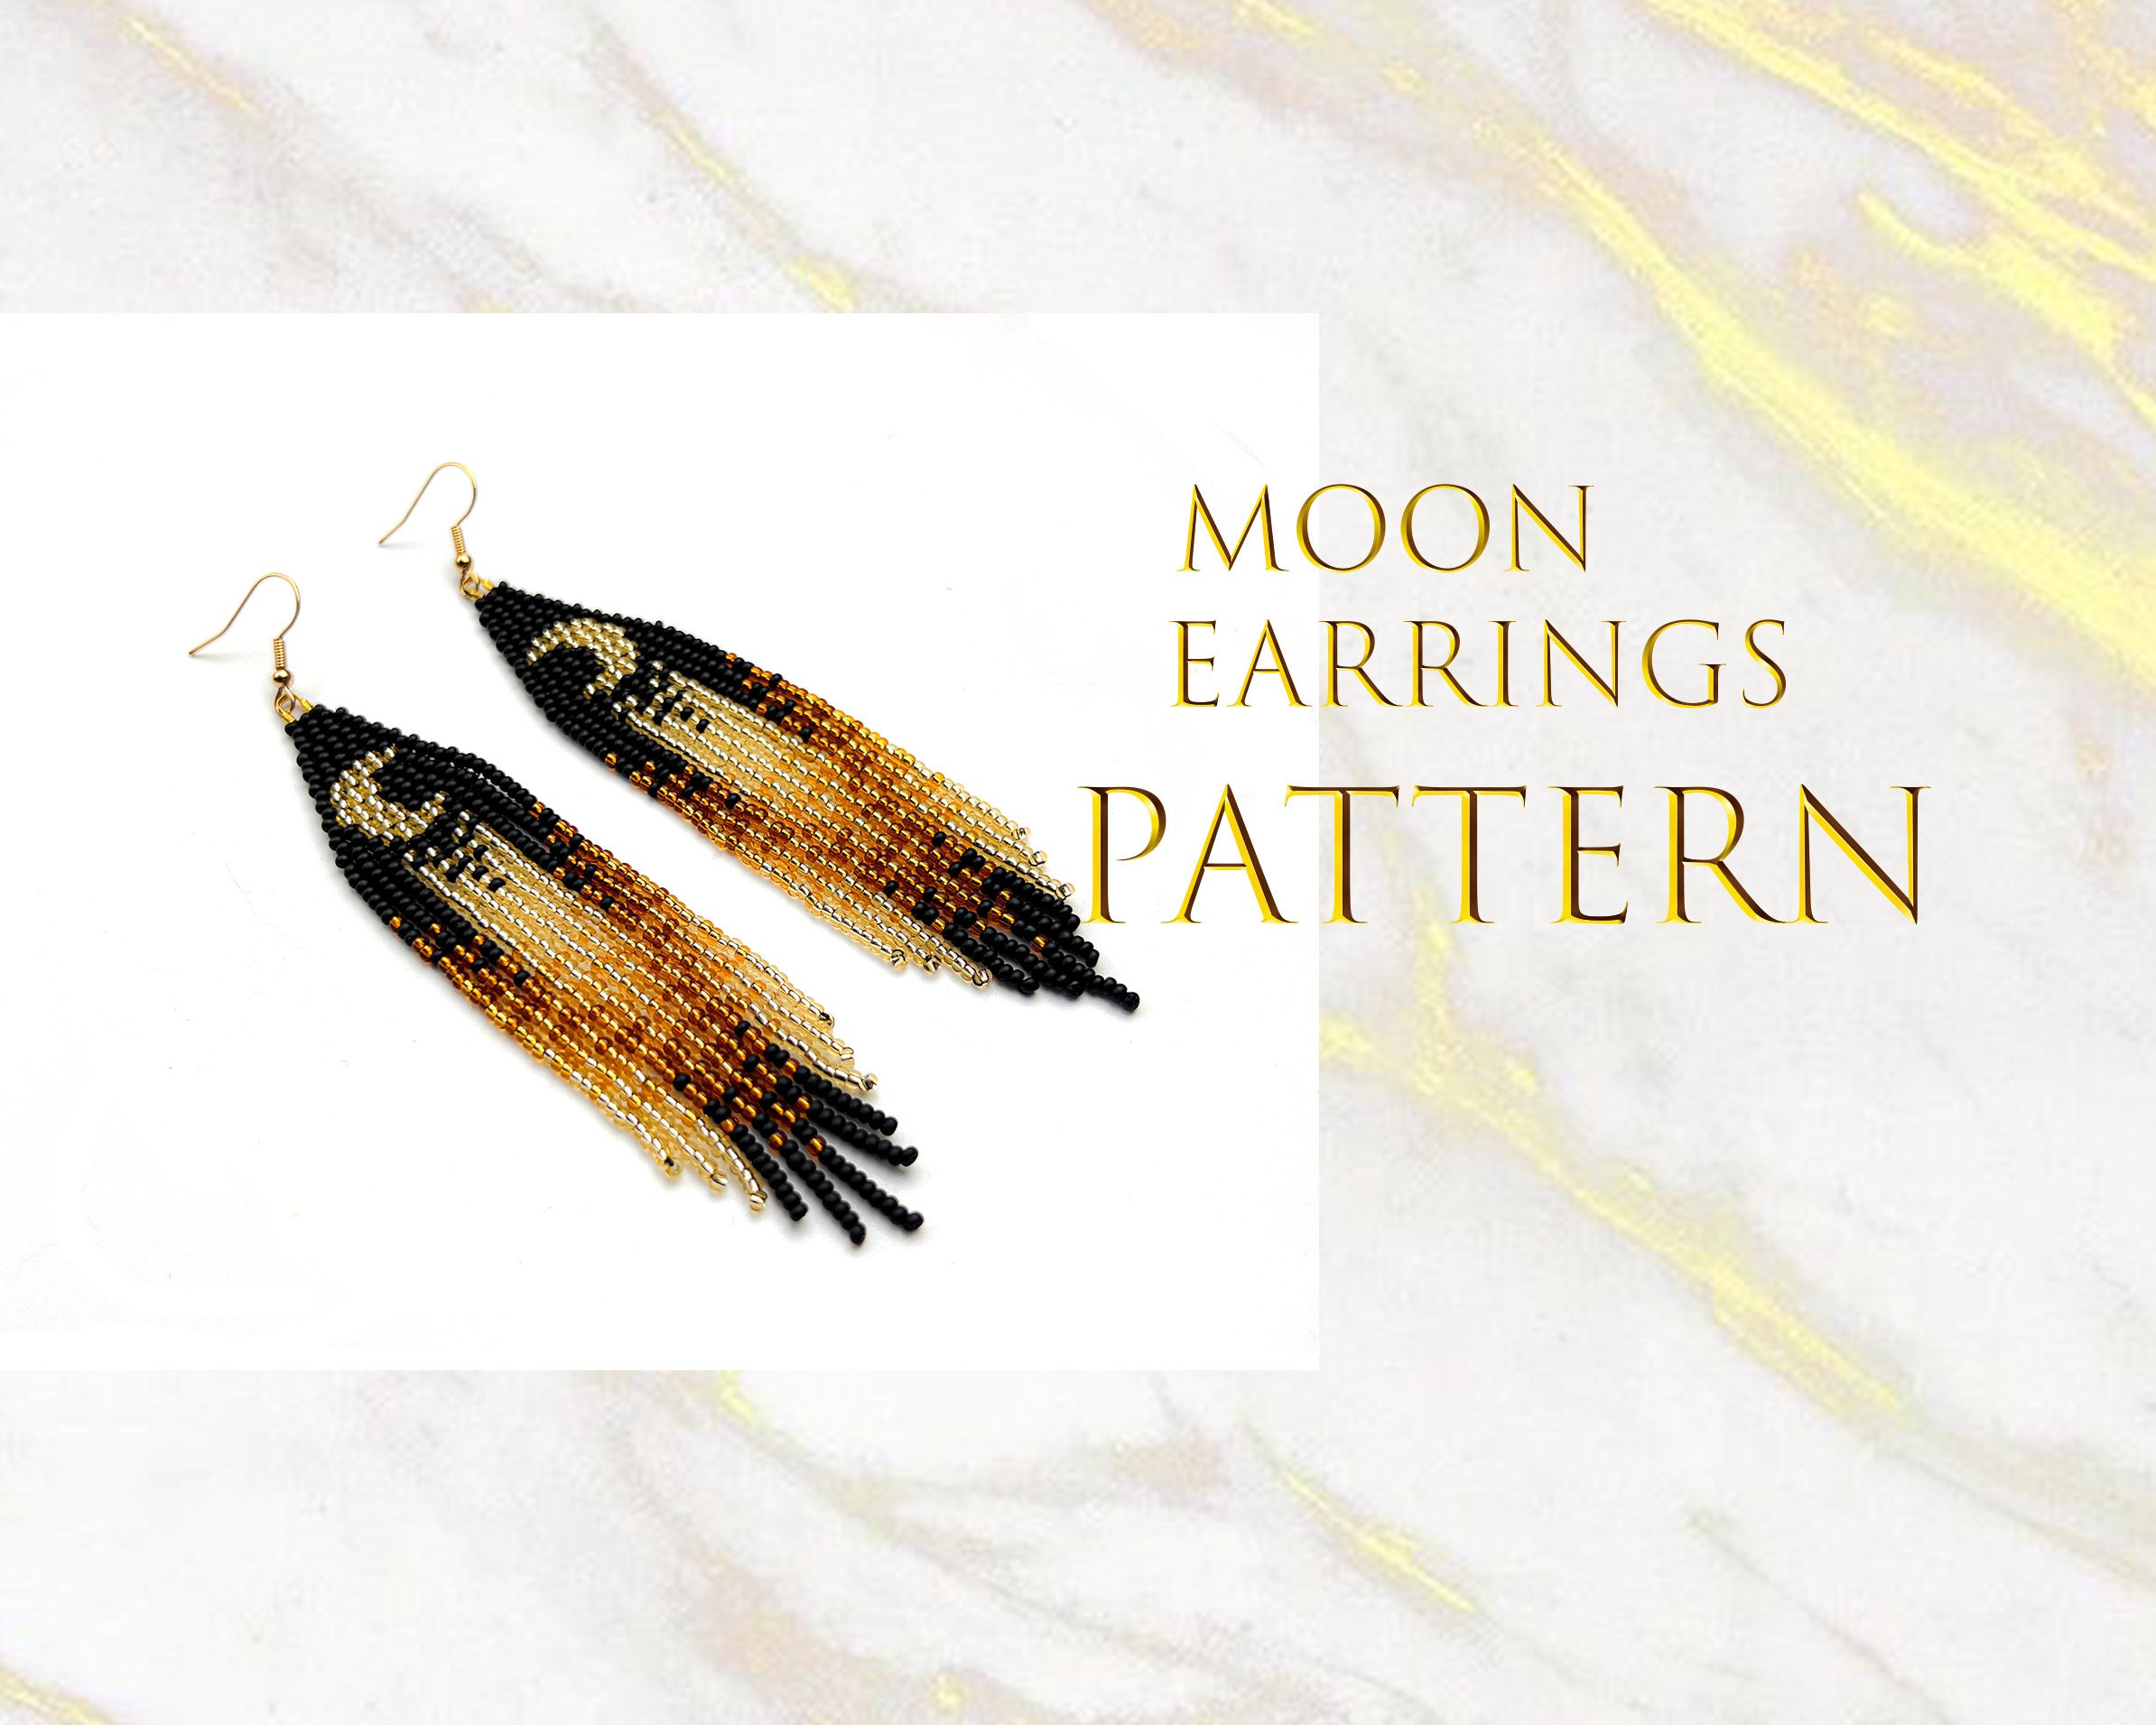 Seed Beads Celestial Moon Fringe Earrings - Full Moon